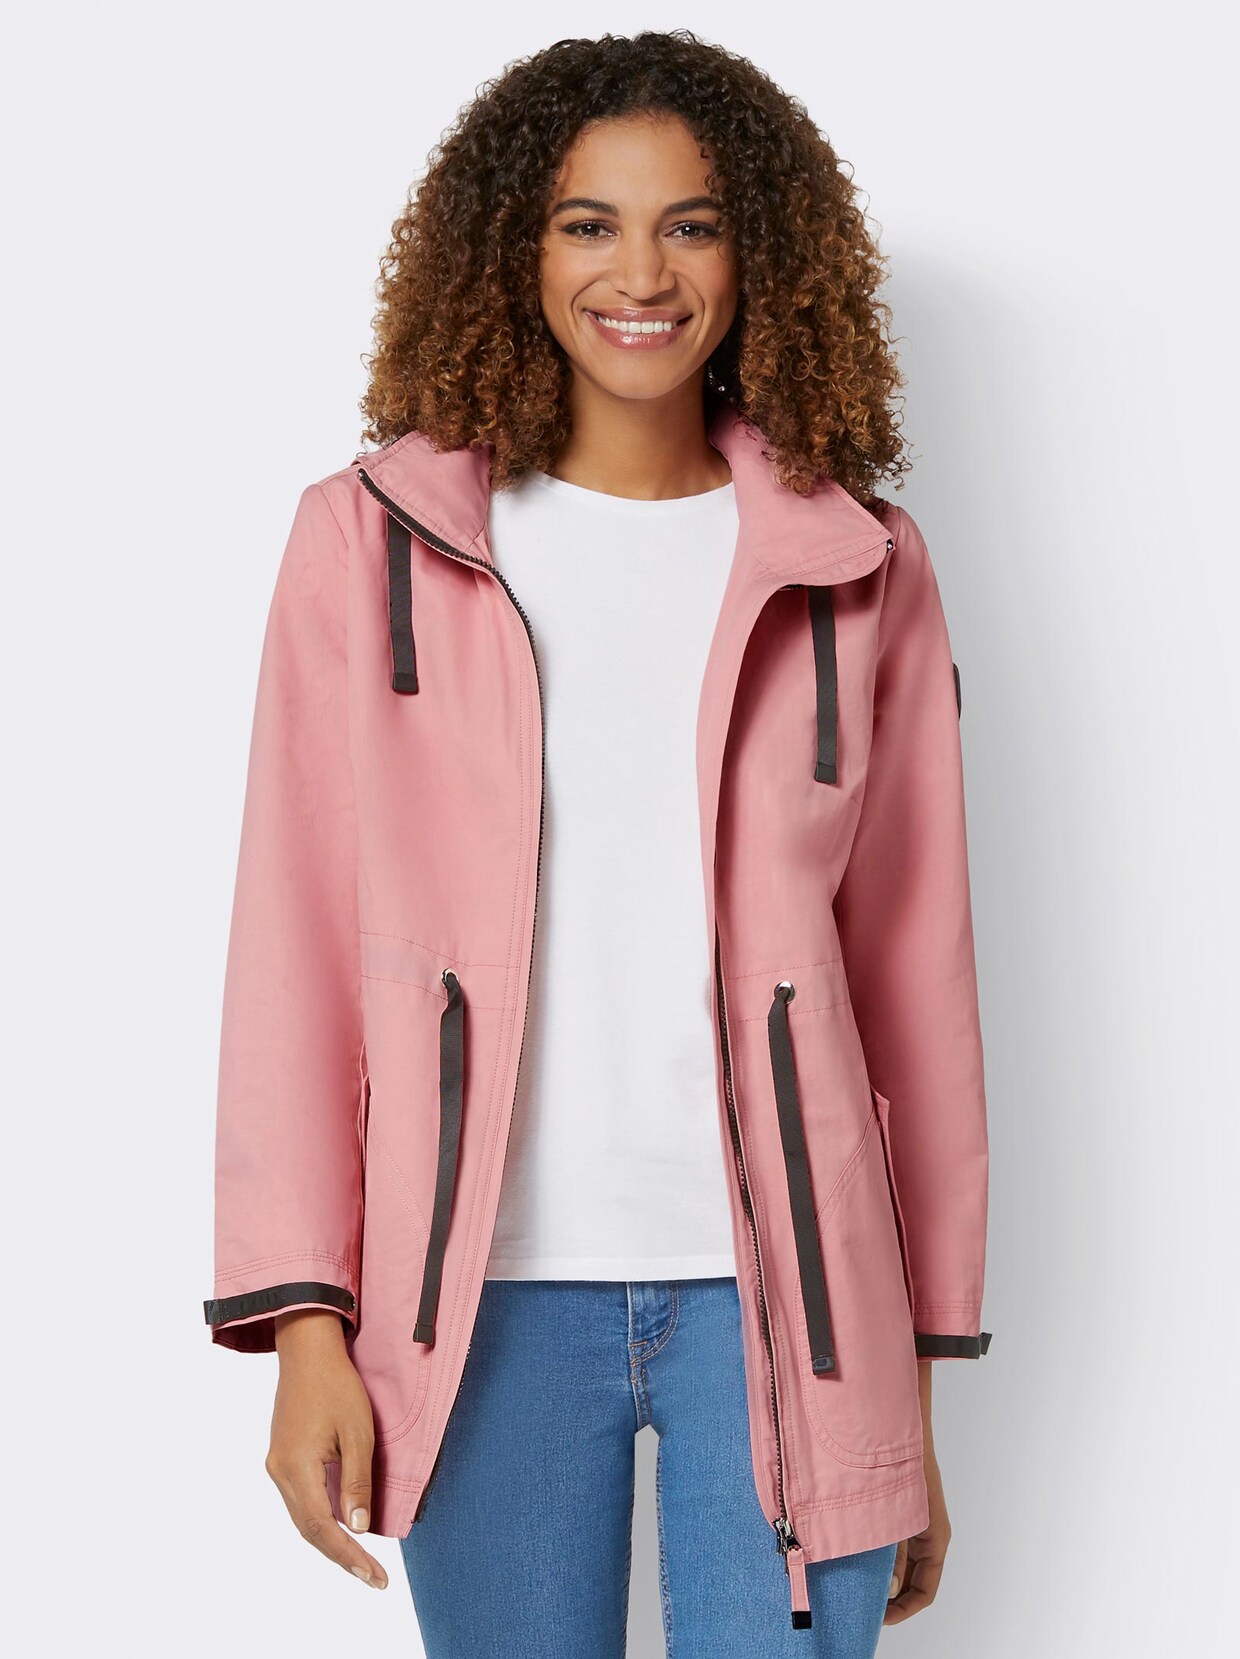 Damen jacke rosa - Die qualitativsten Damen jacke rosa ausführlich verglichen!